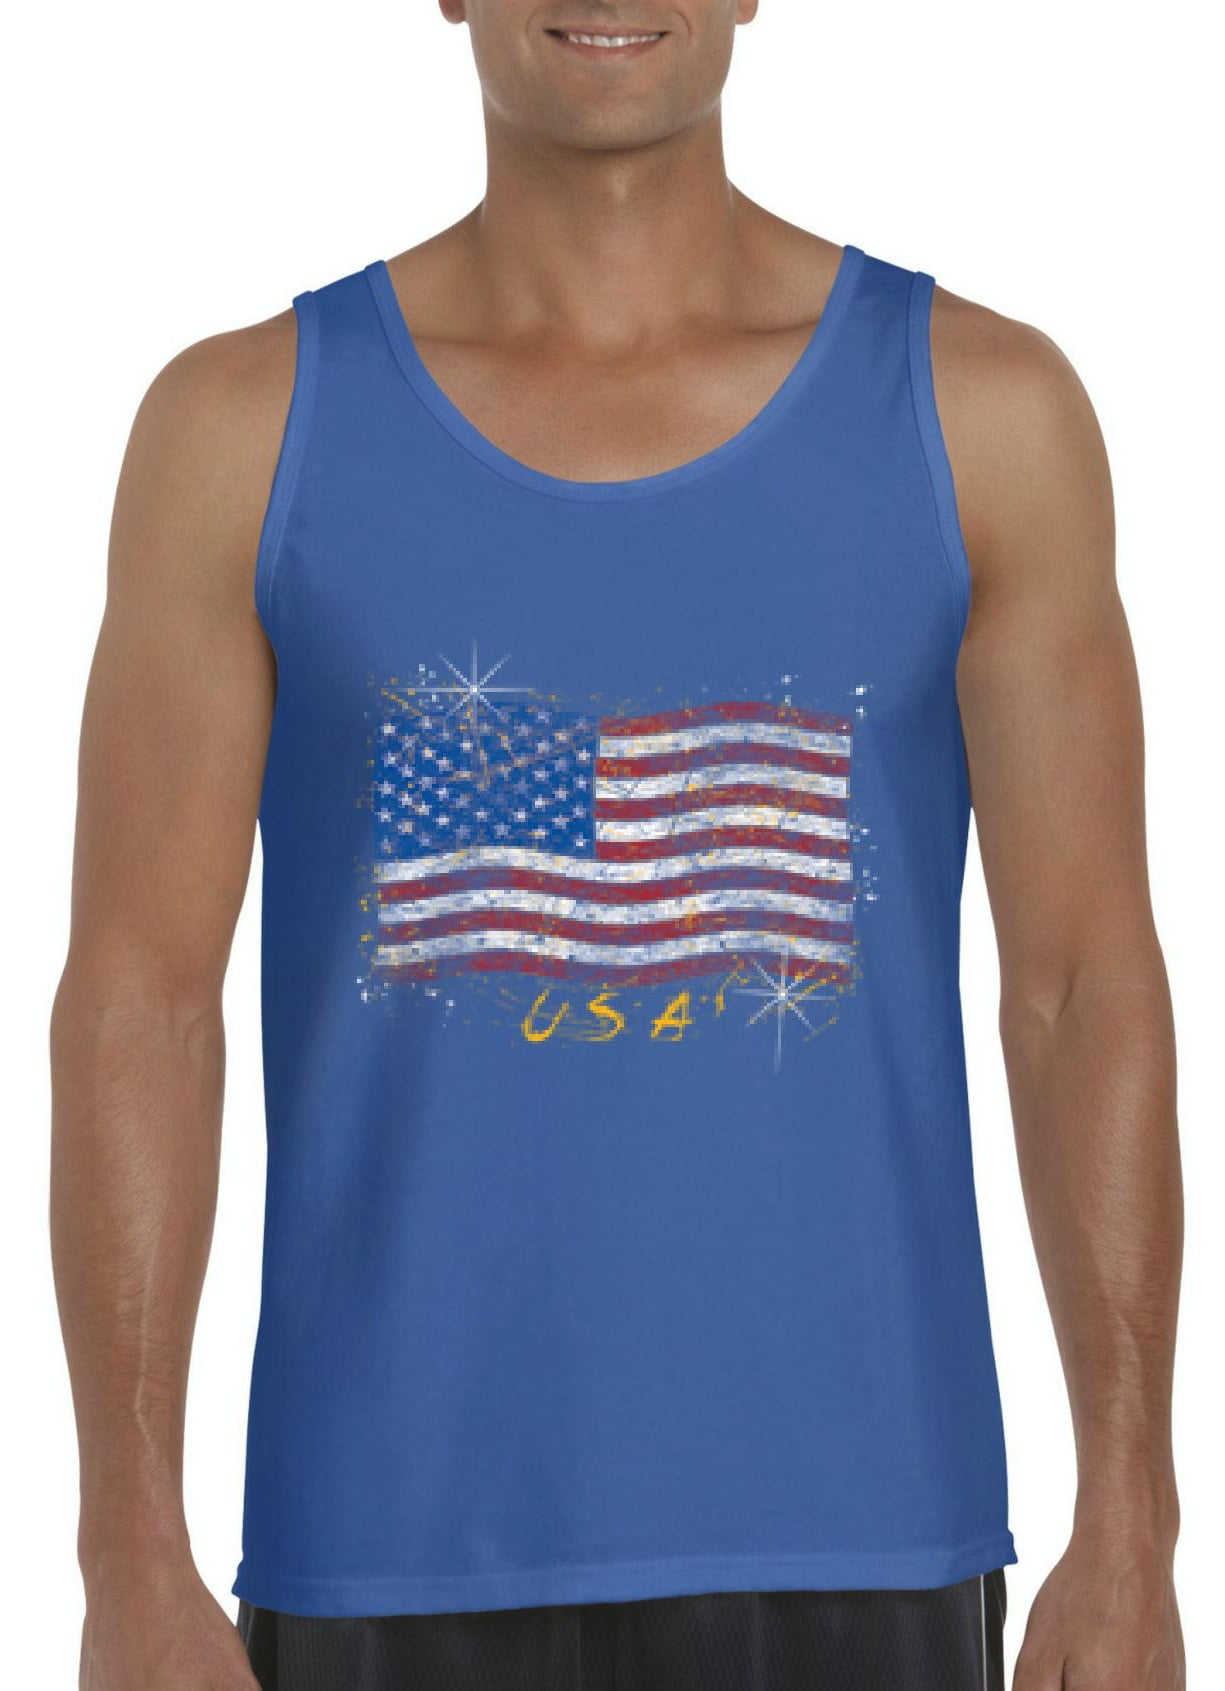 Artix - Mens American Flag USA Tank Top - Walmart.com - Walmart.com